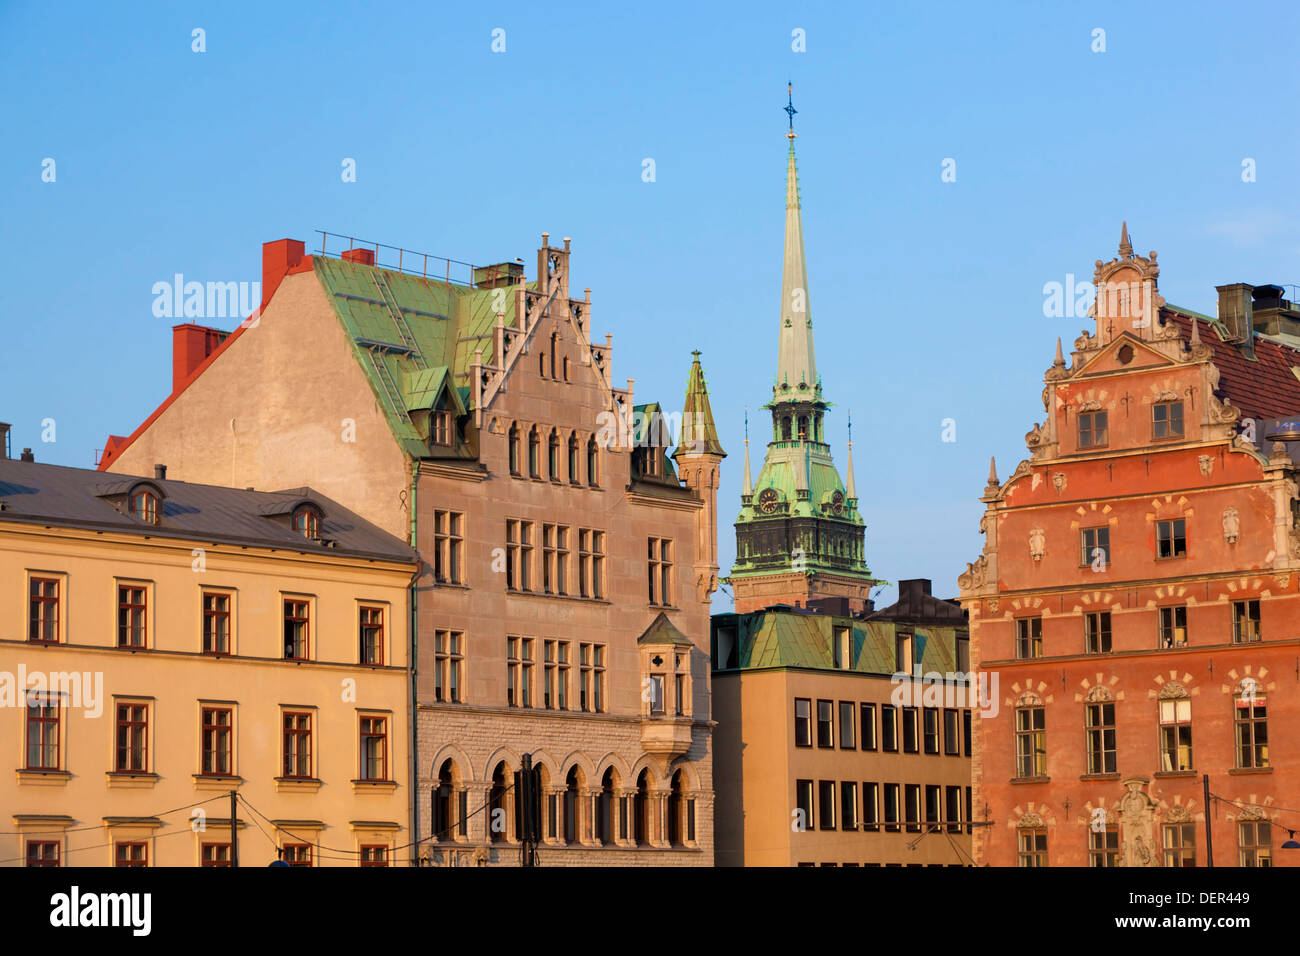 Les bâtiments de la vieille ville dans le quartier de Gamla Stan, Stockholm, Suède. Banque D'Images